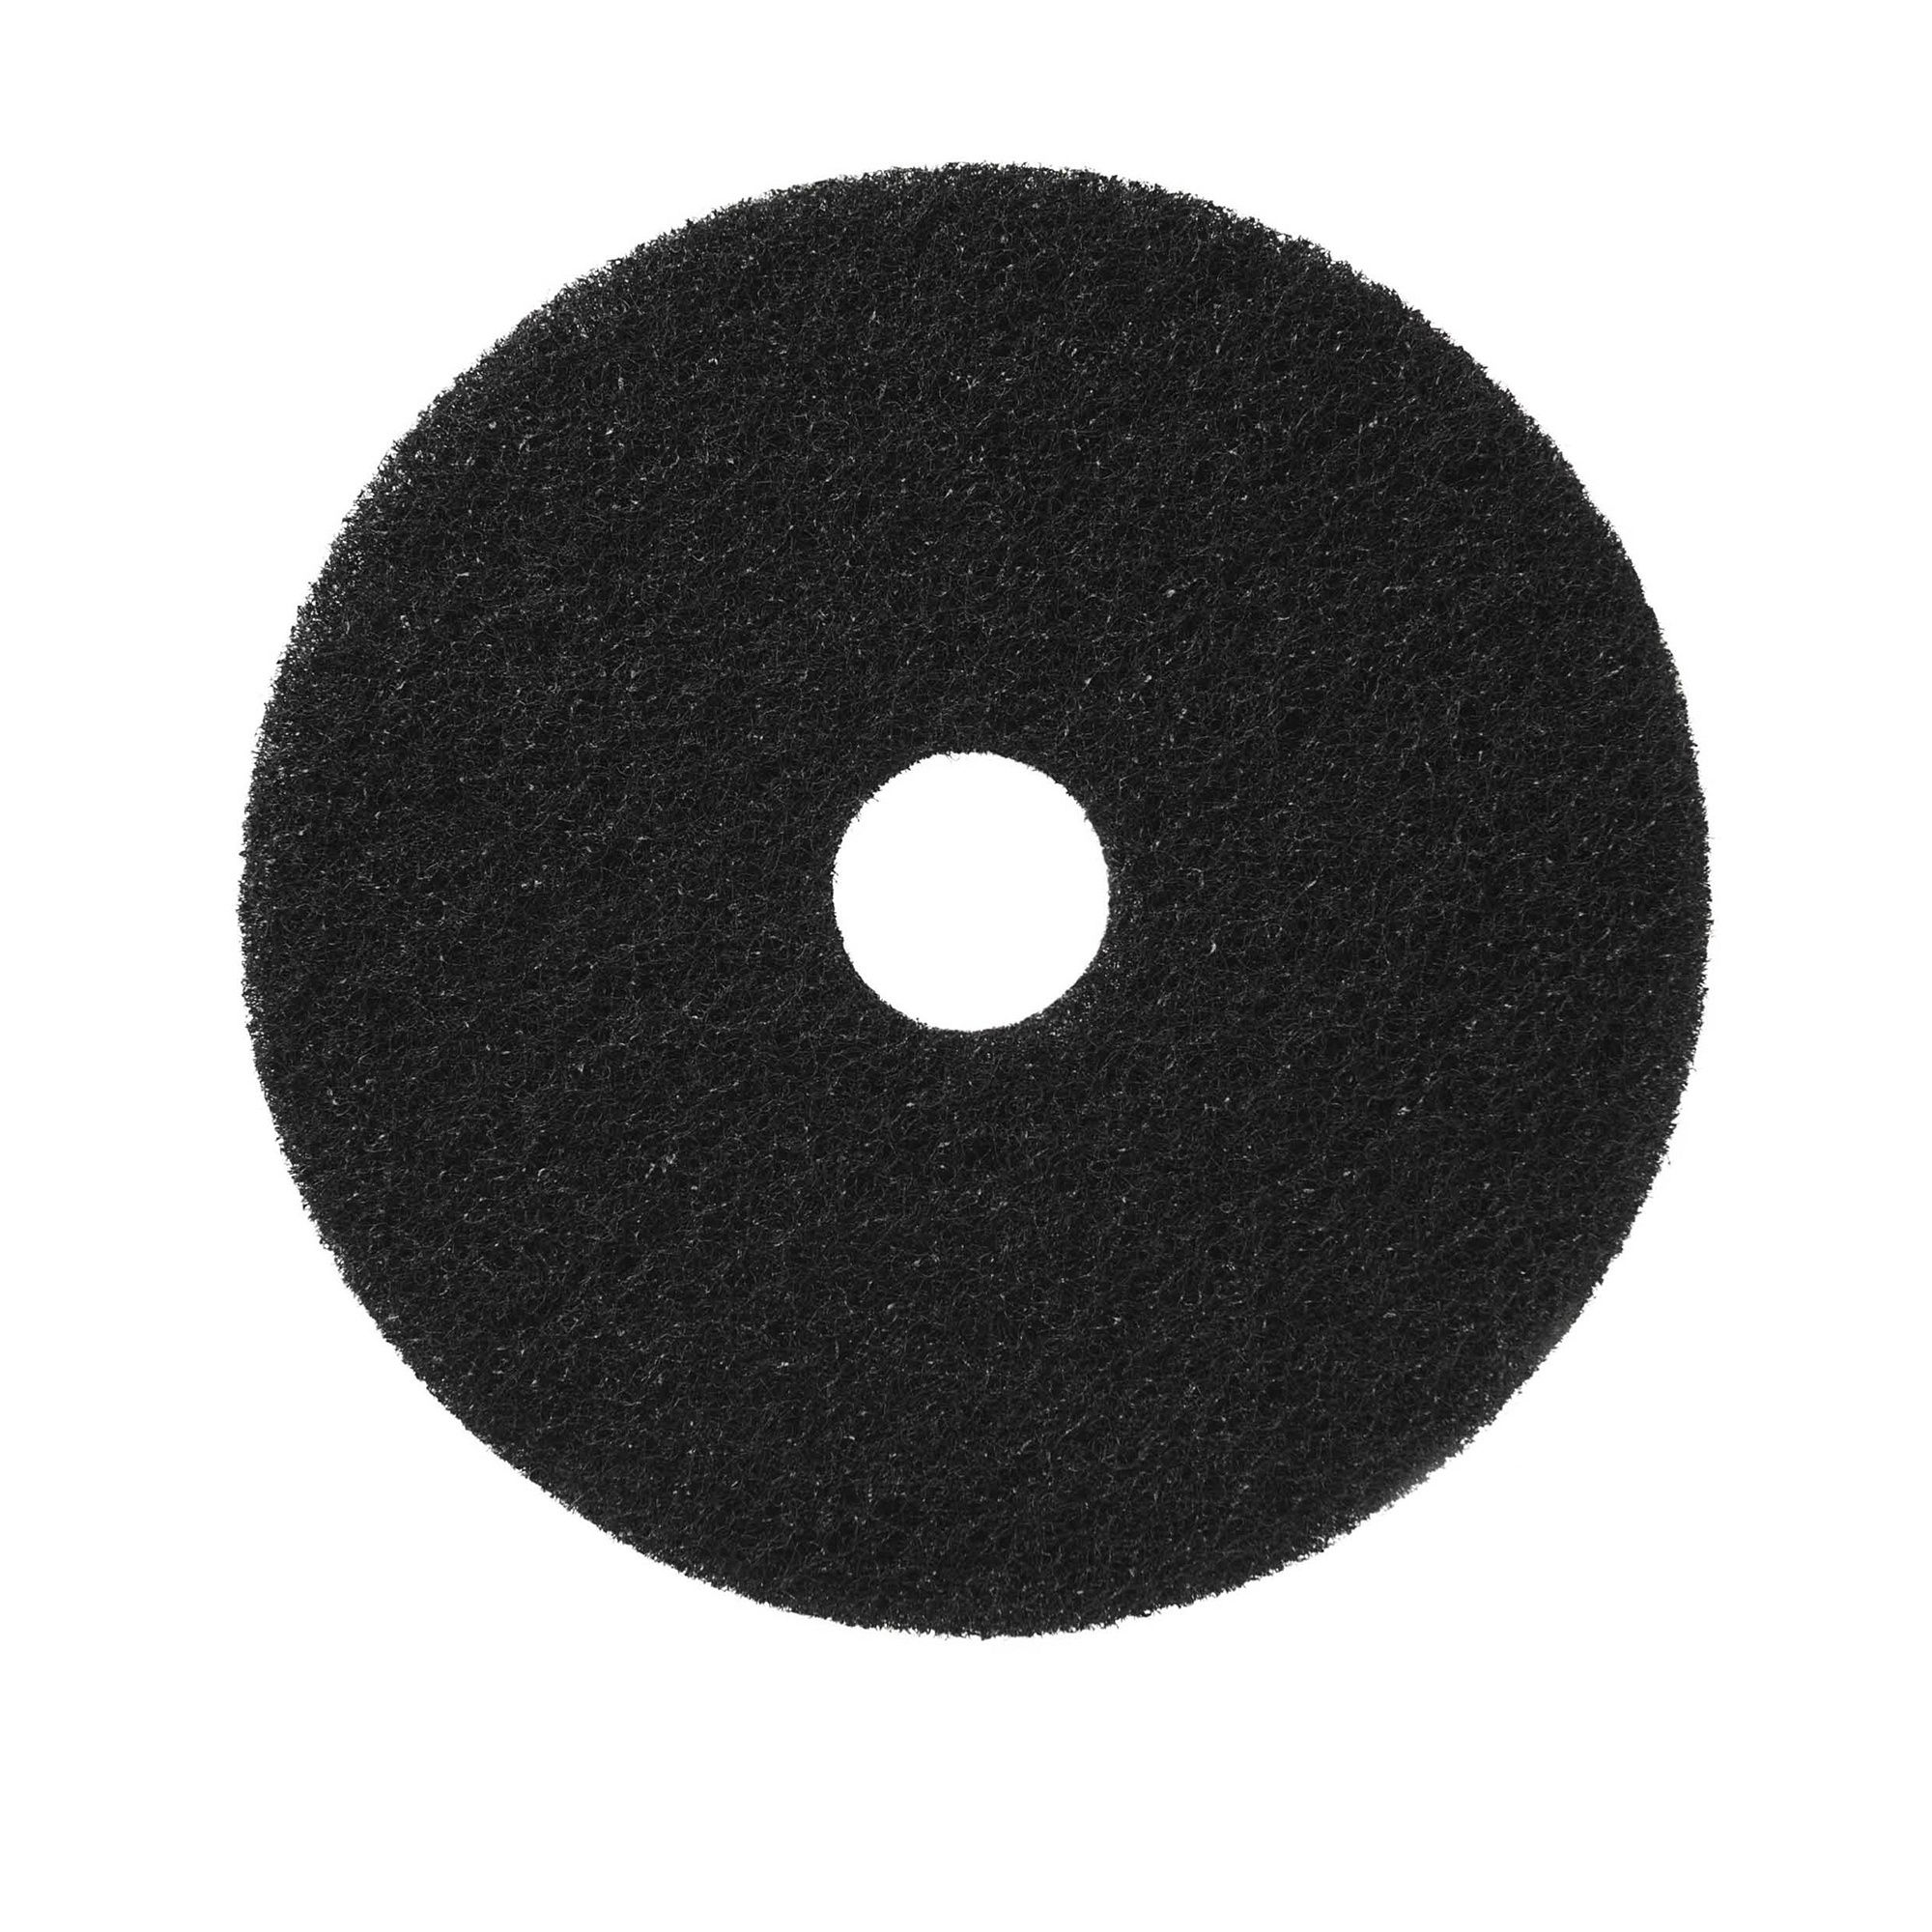 NuPad zwart (strippen met chemie), per 5 stuks, 20 inch / 508 mm